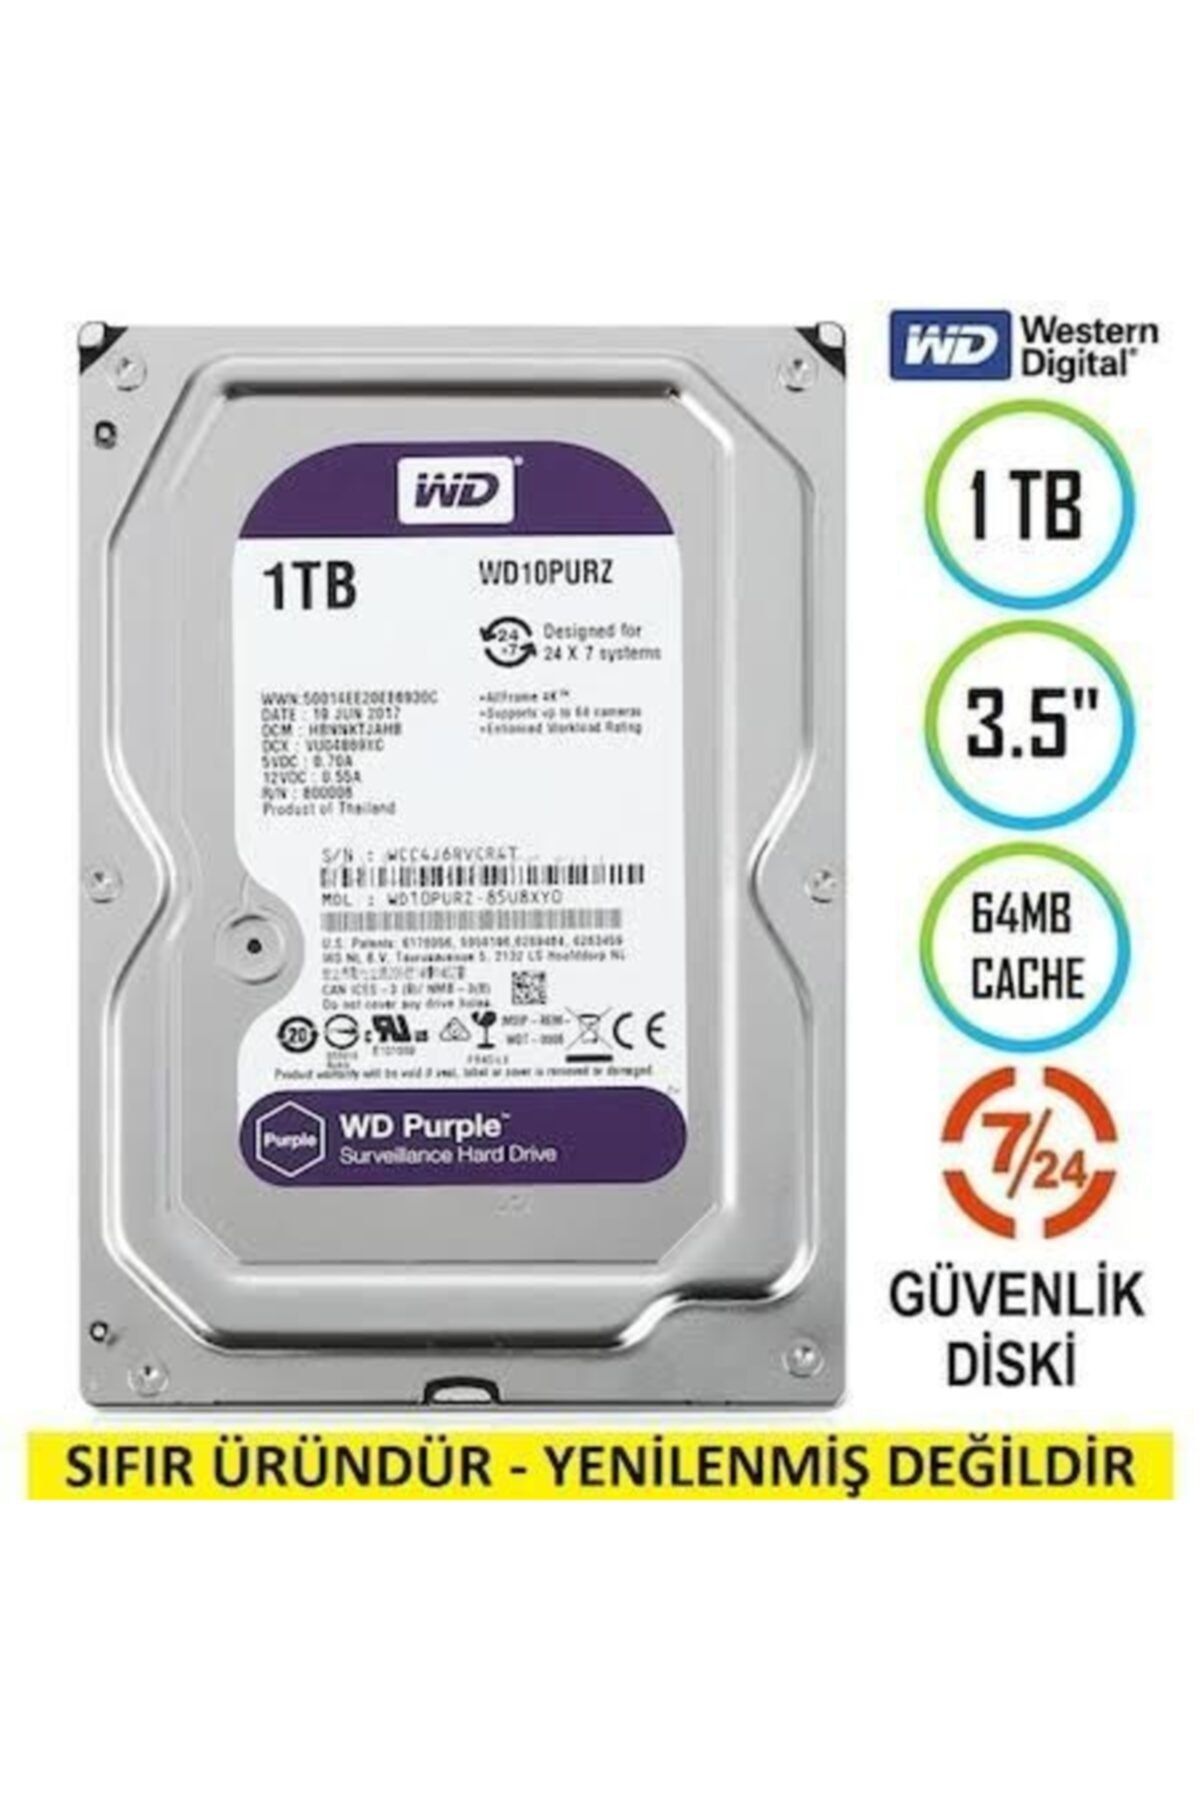 WD Purple Wd10purx 1 Tb 3.5" Sata Hdd